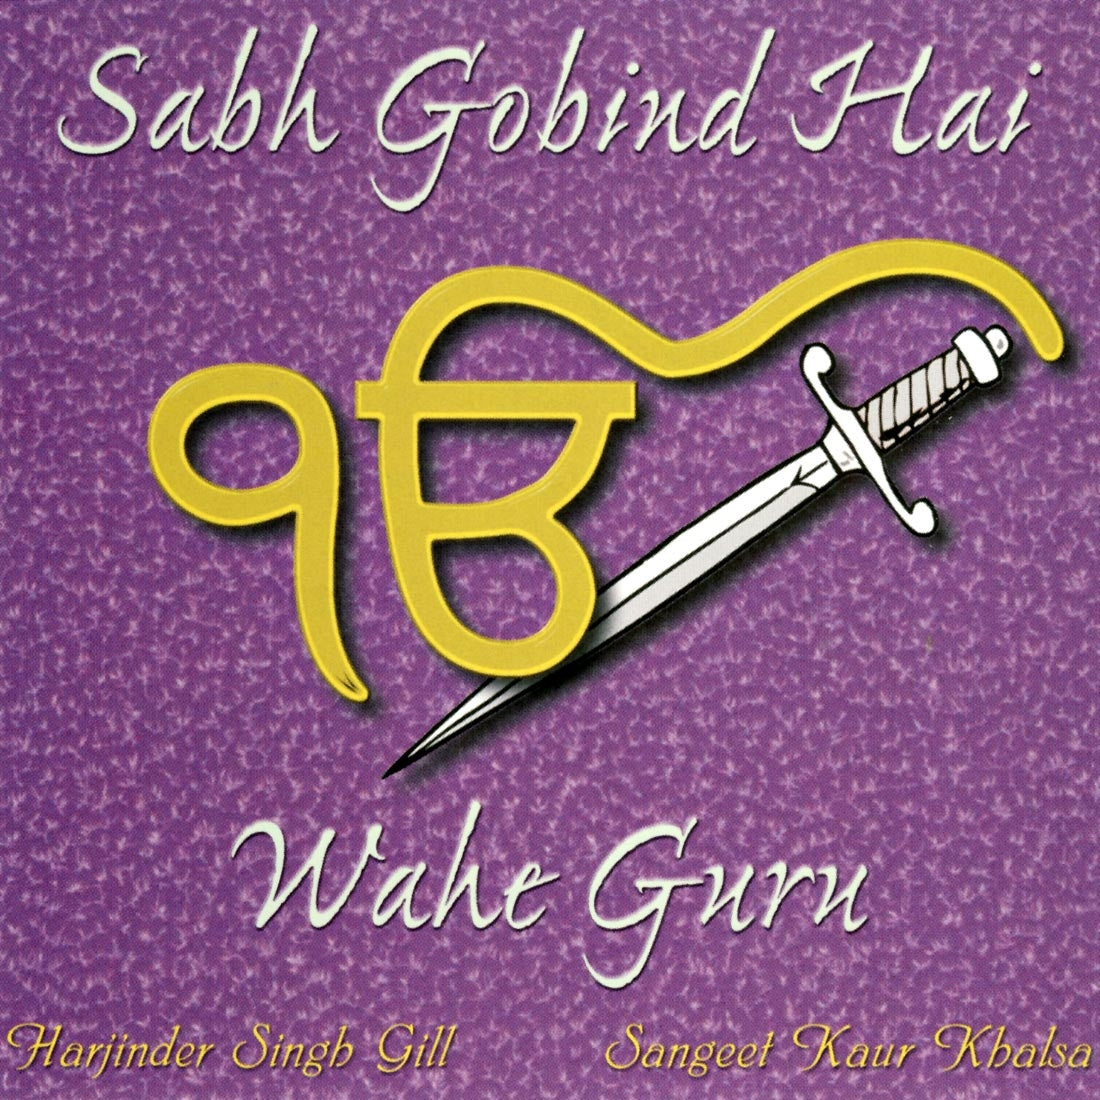 Wahe Guru - Sangeet Kaur